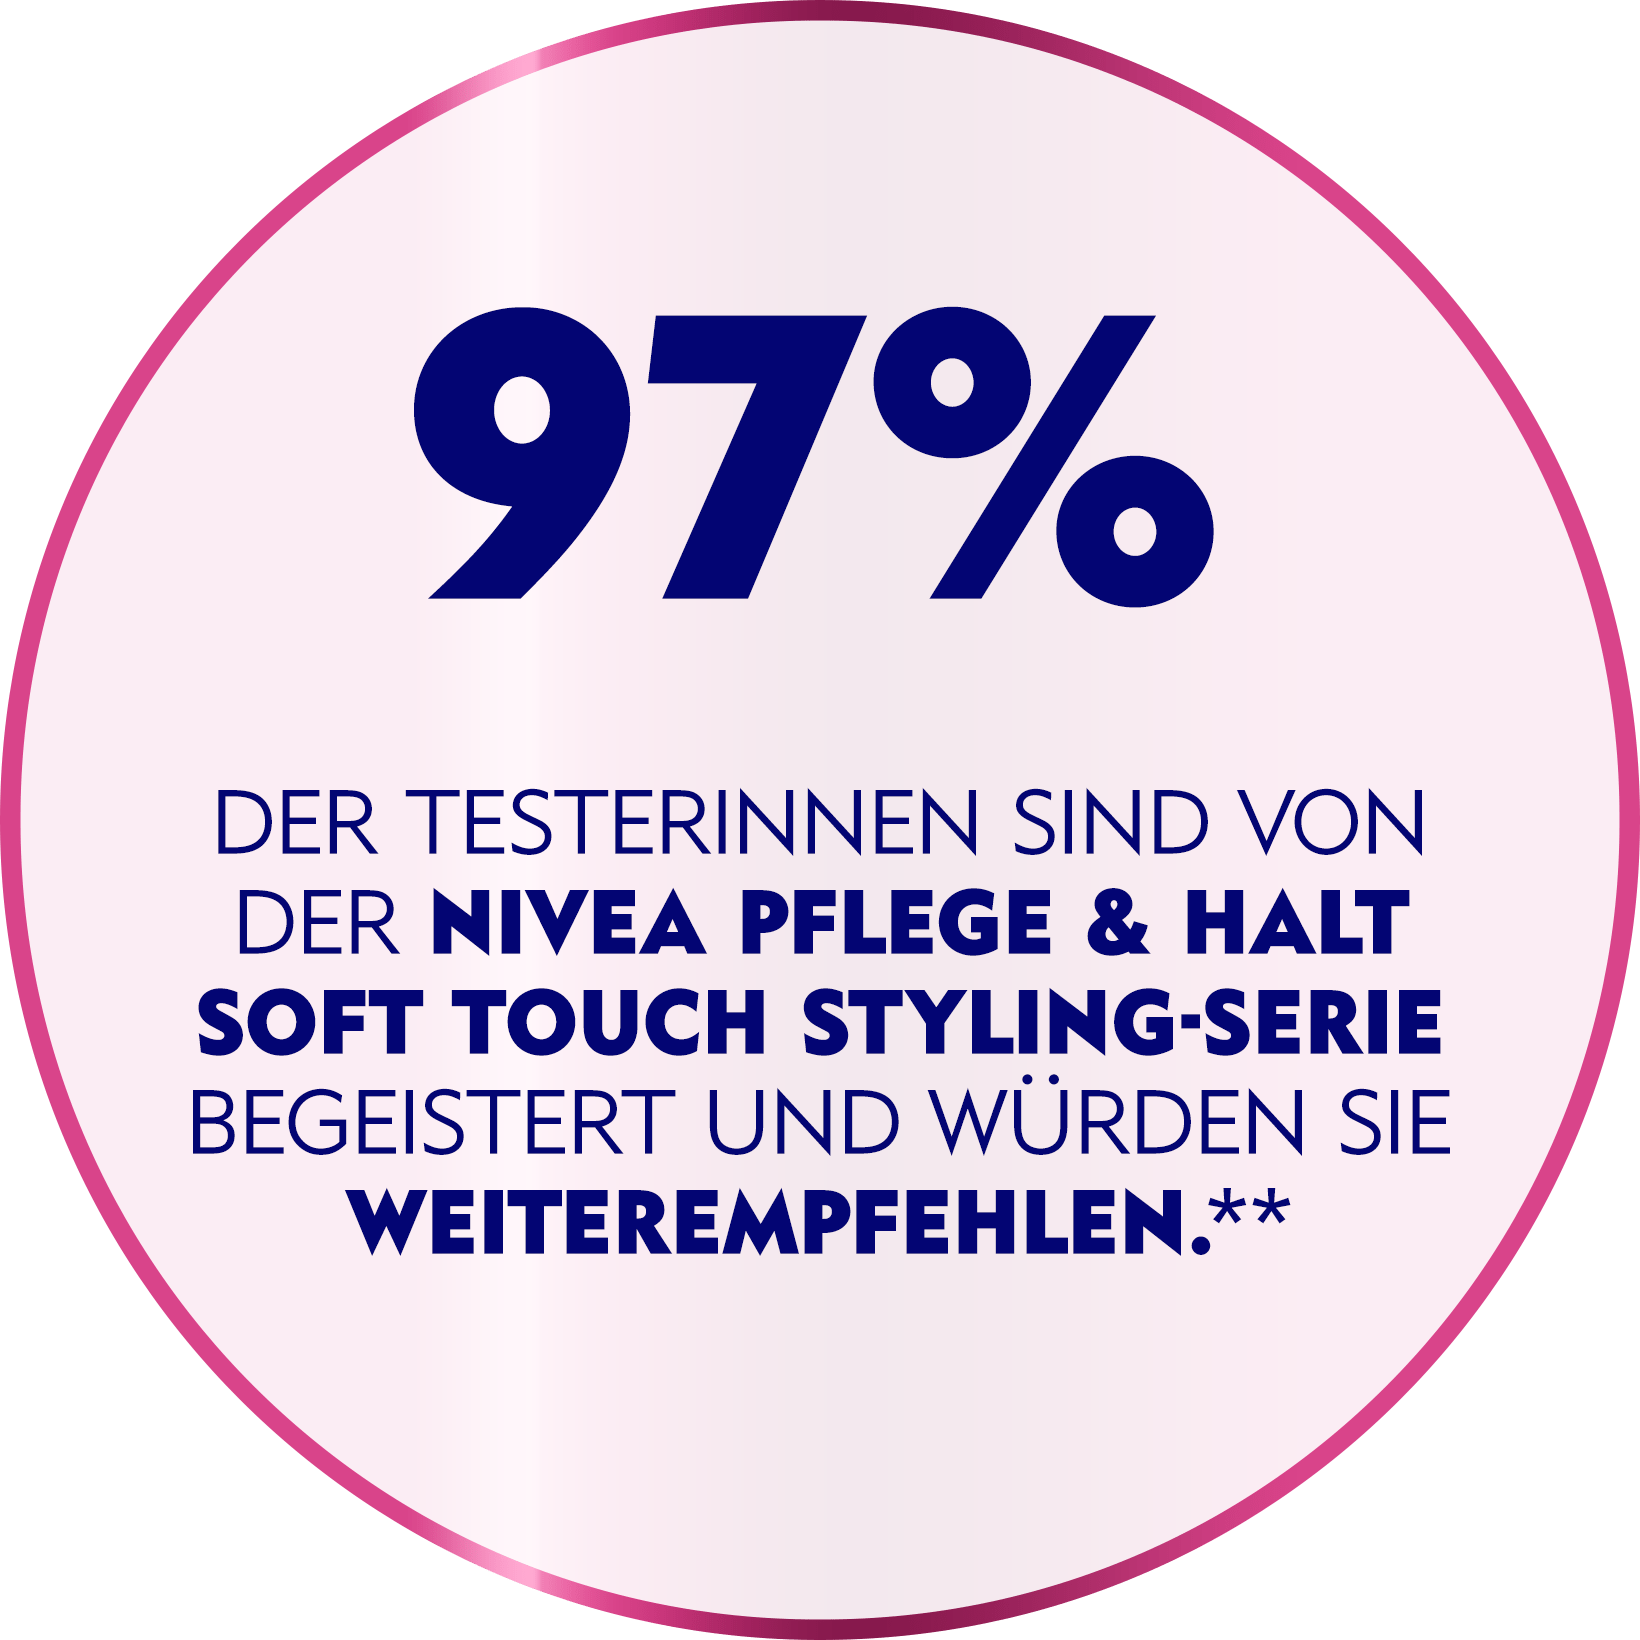 NIVEA Pflege und Halt Soft Touch – 97 % sind überzeugt